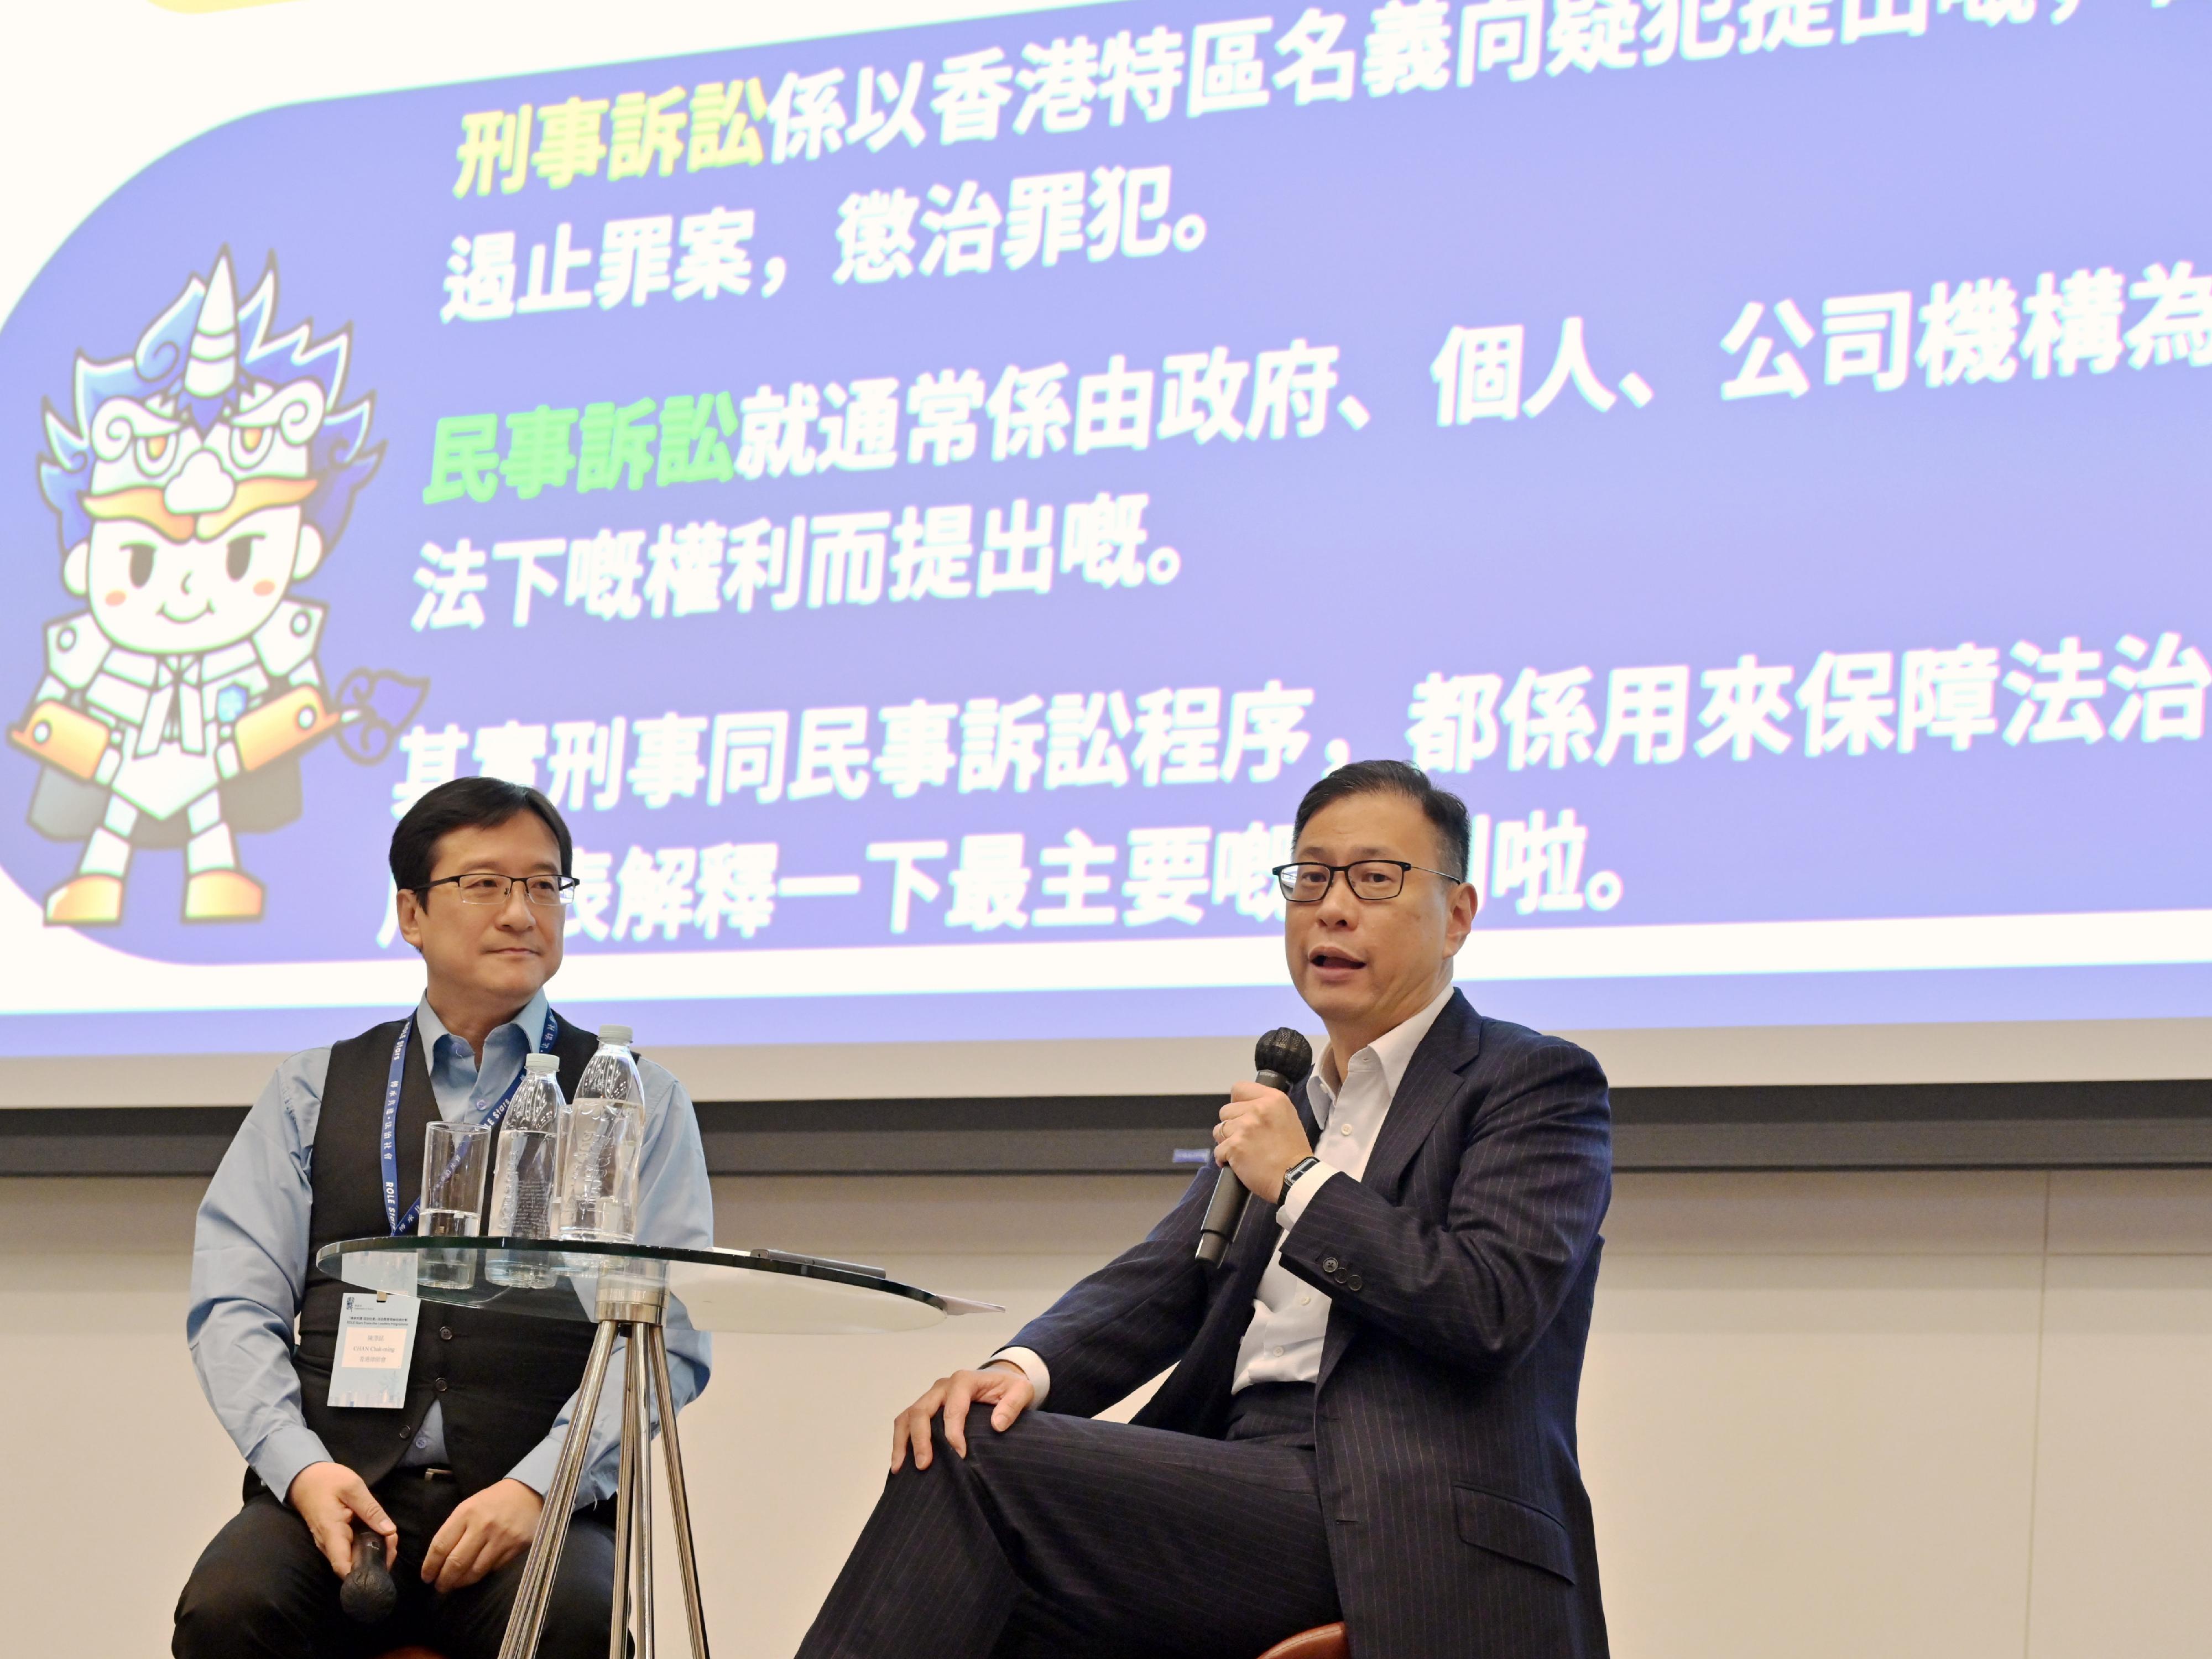 香港大律師公會主席杜淦堃資深大律師（右）和香港律師會會長陳澤銘（左）擔任導師授課，分享他們的專業見解及實踐經驗。